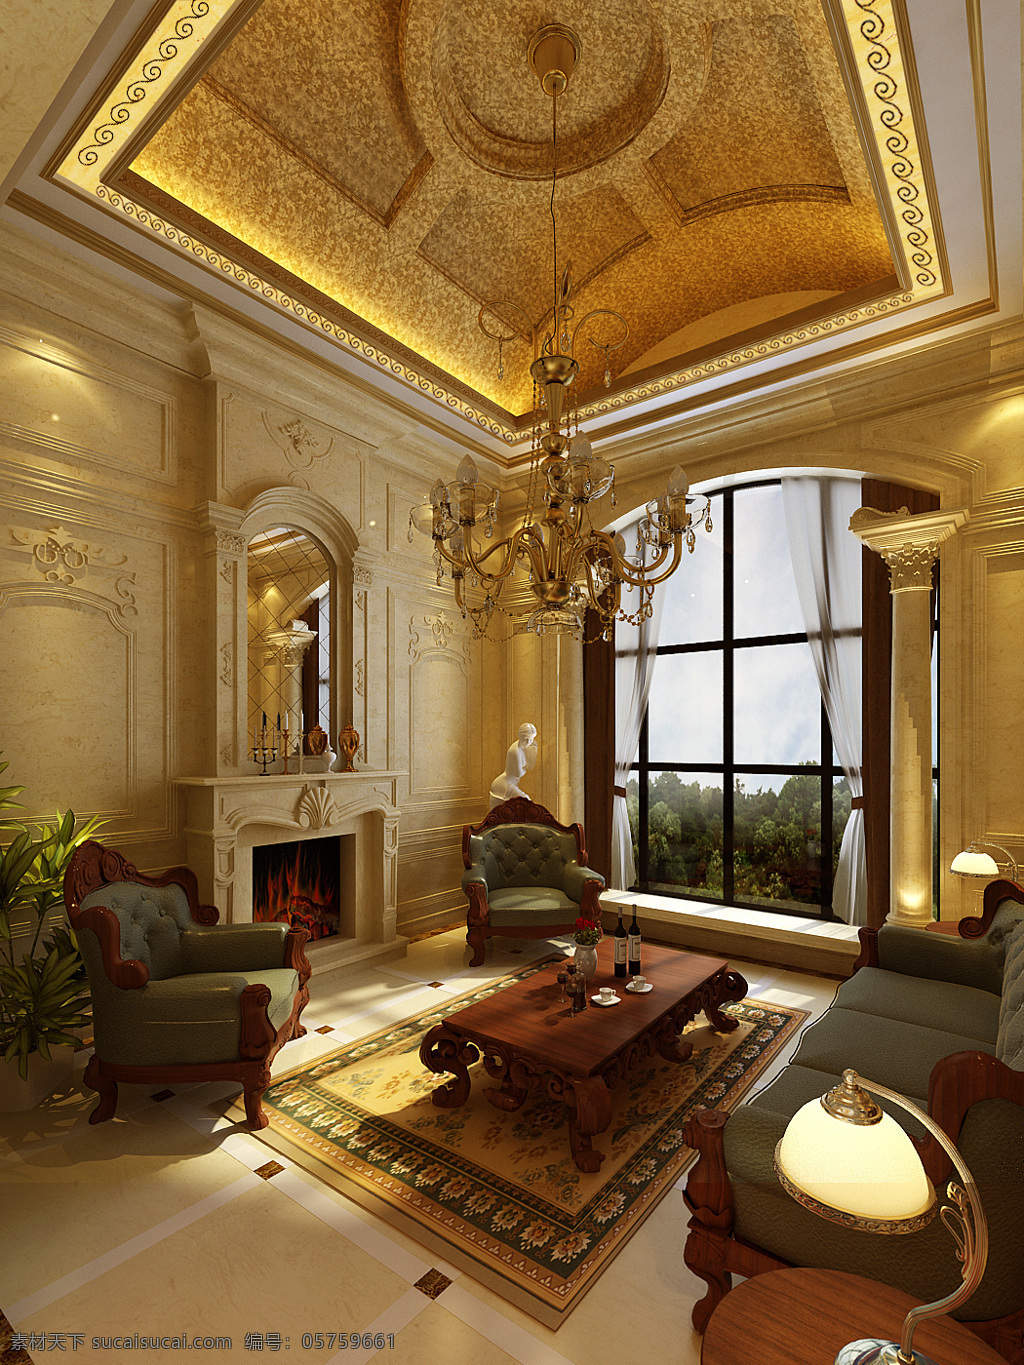 客厅 壁炉 环境设计 欧式 室内设计 效果图 黑沙发 家居装饰素材